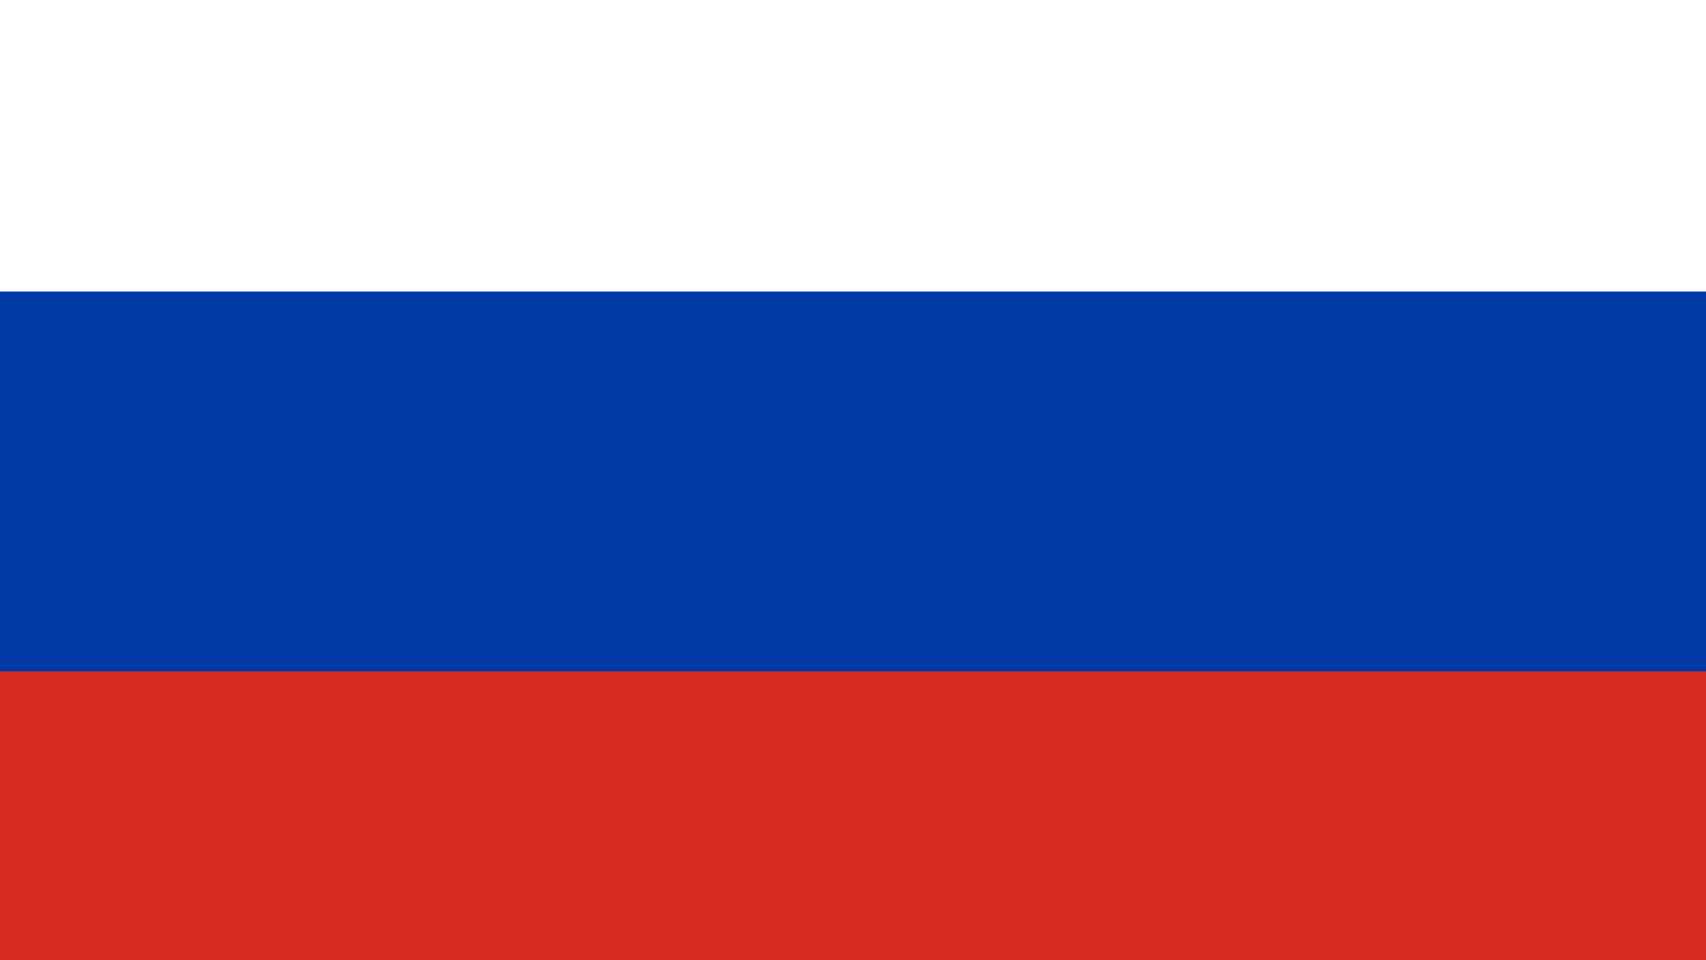 La bandera de Rusia.